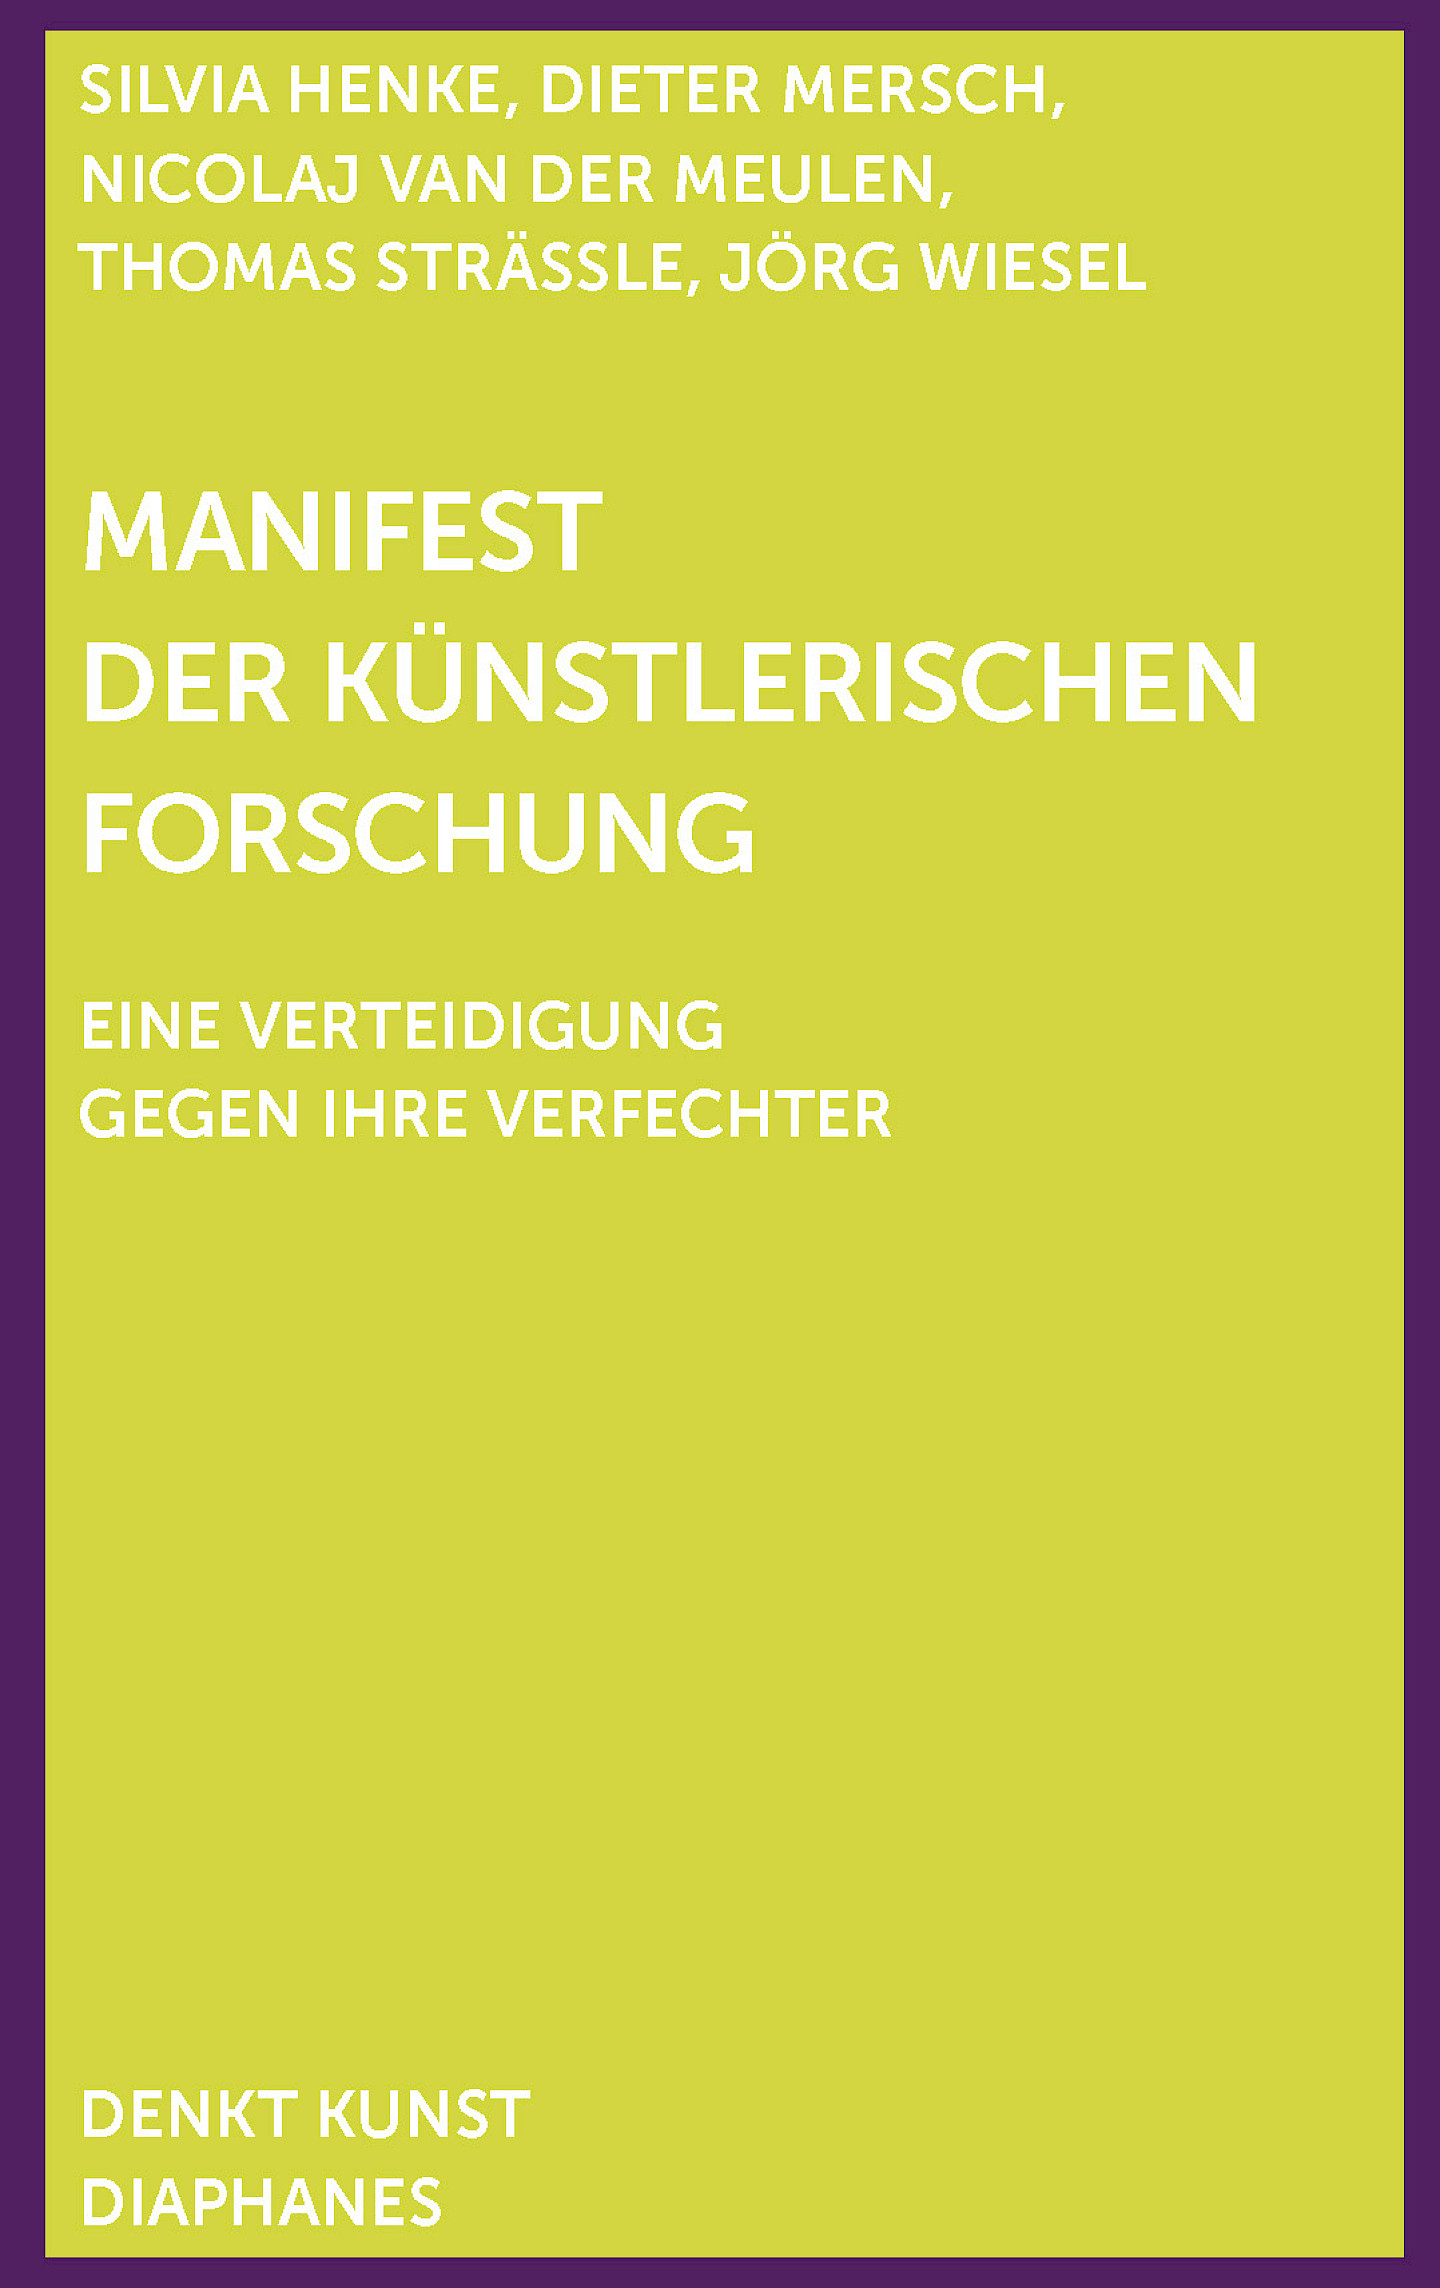 Manifest der künstlerischen Forschung: Buchvorstellung, szenische Lesung und Gespräch